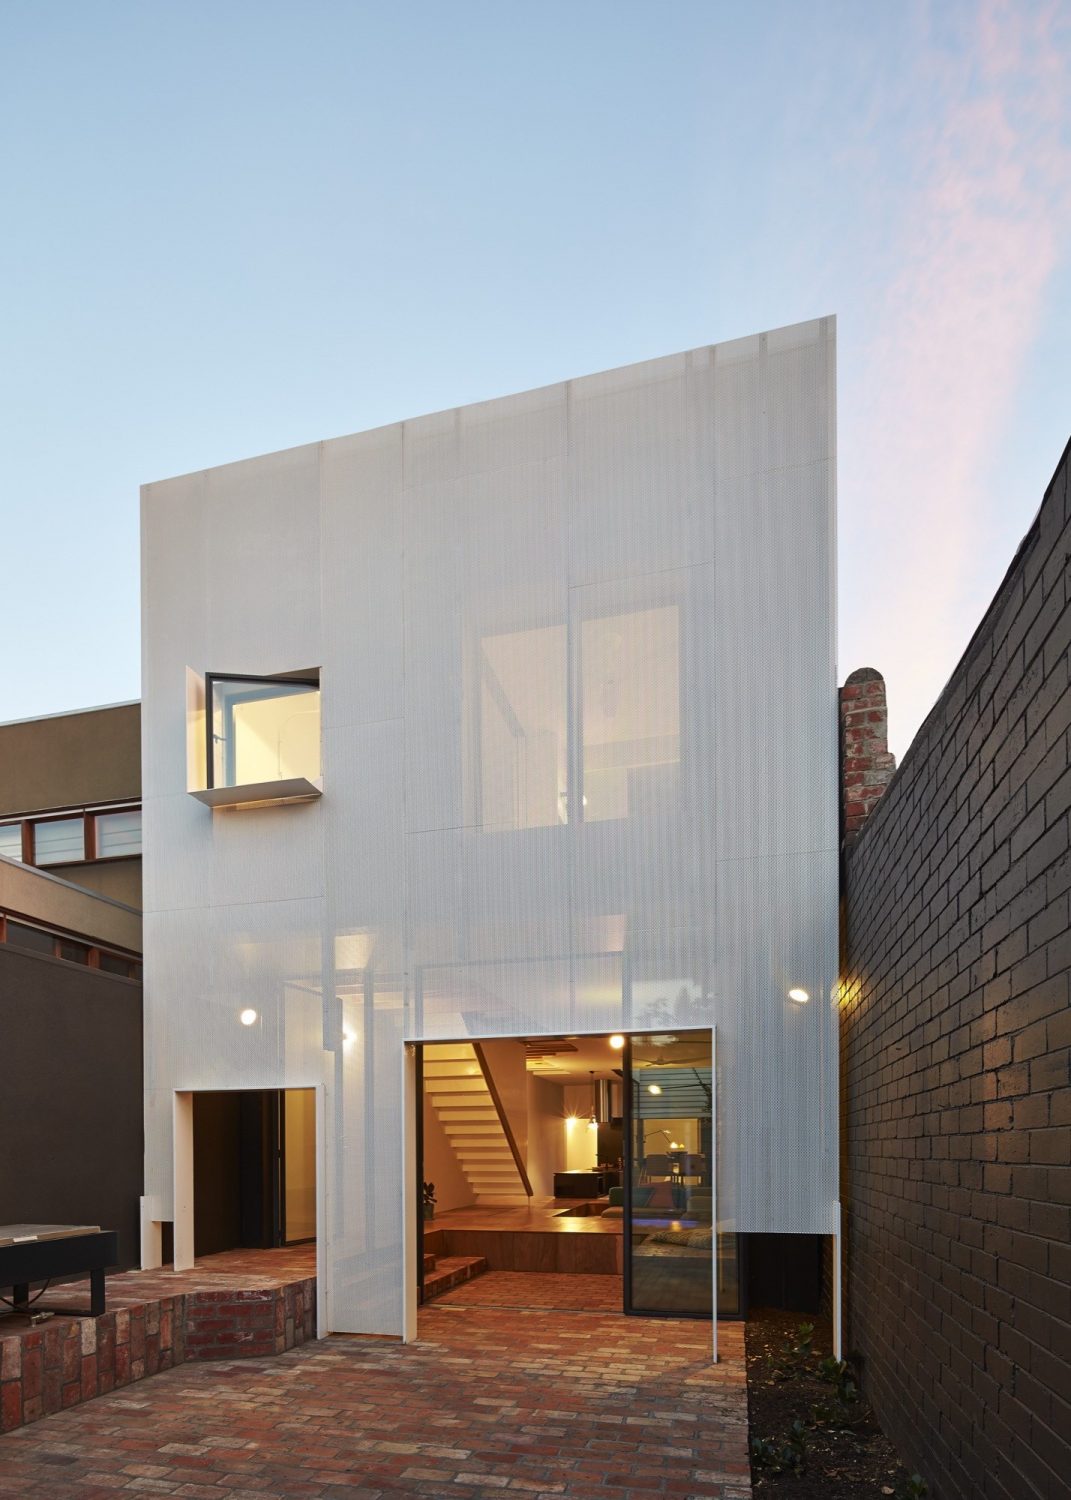 Mills House by Austin Maynard Architects